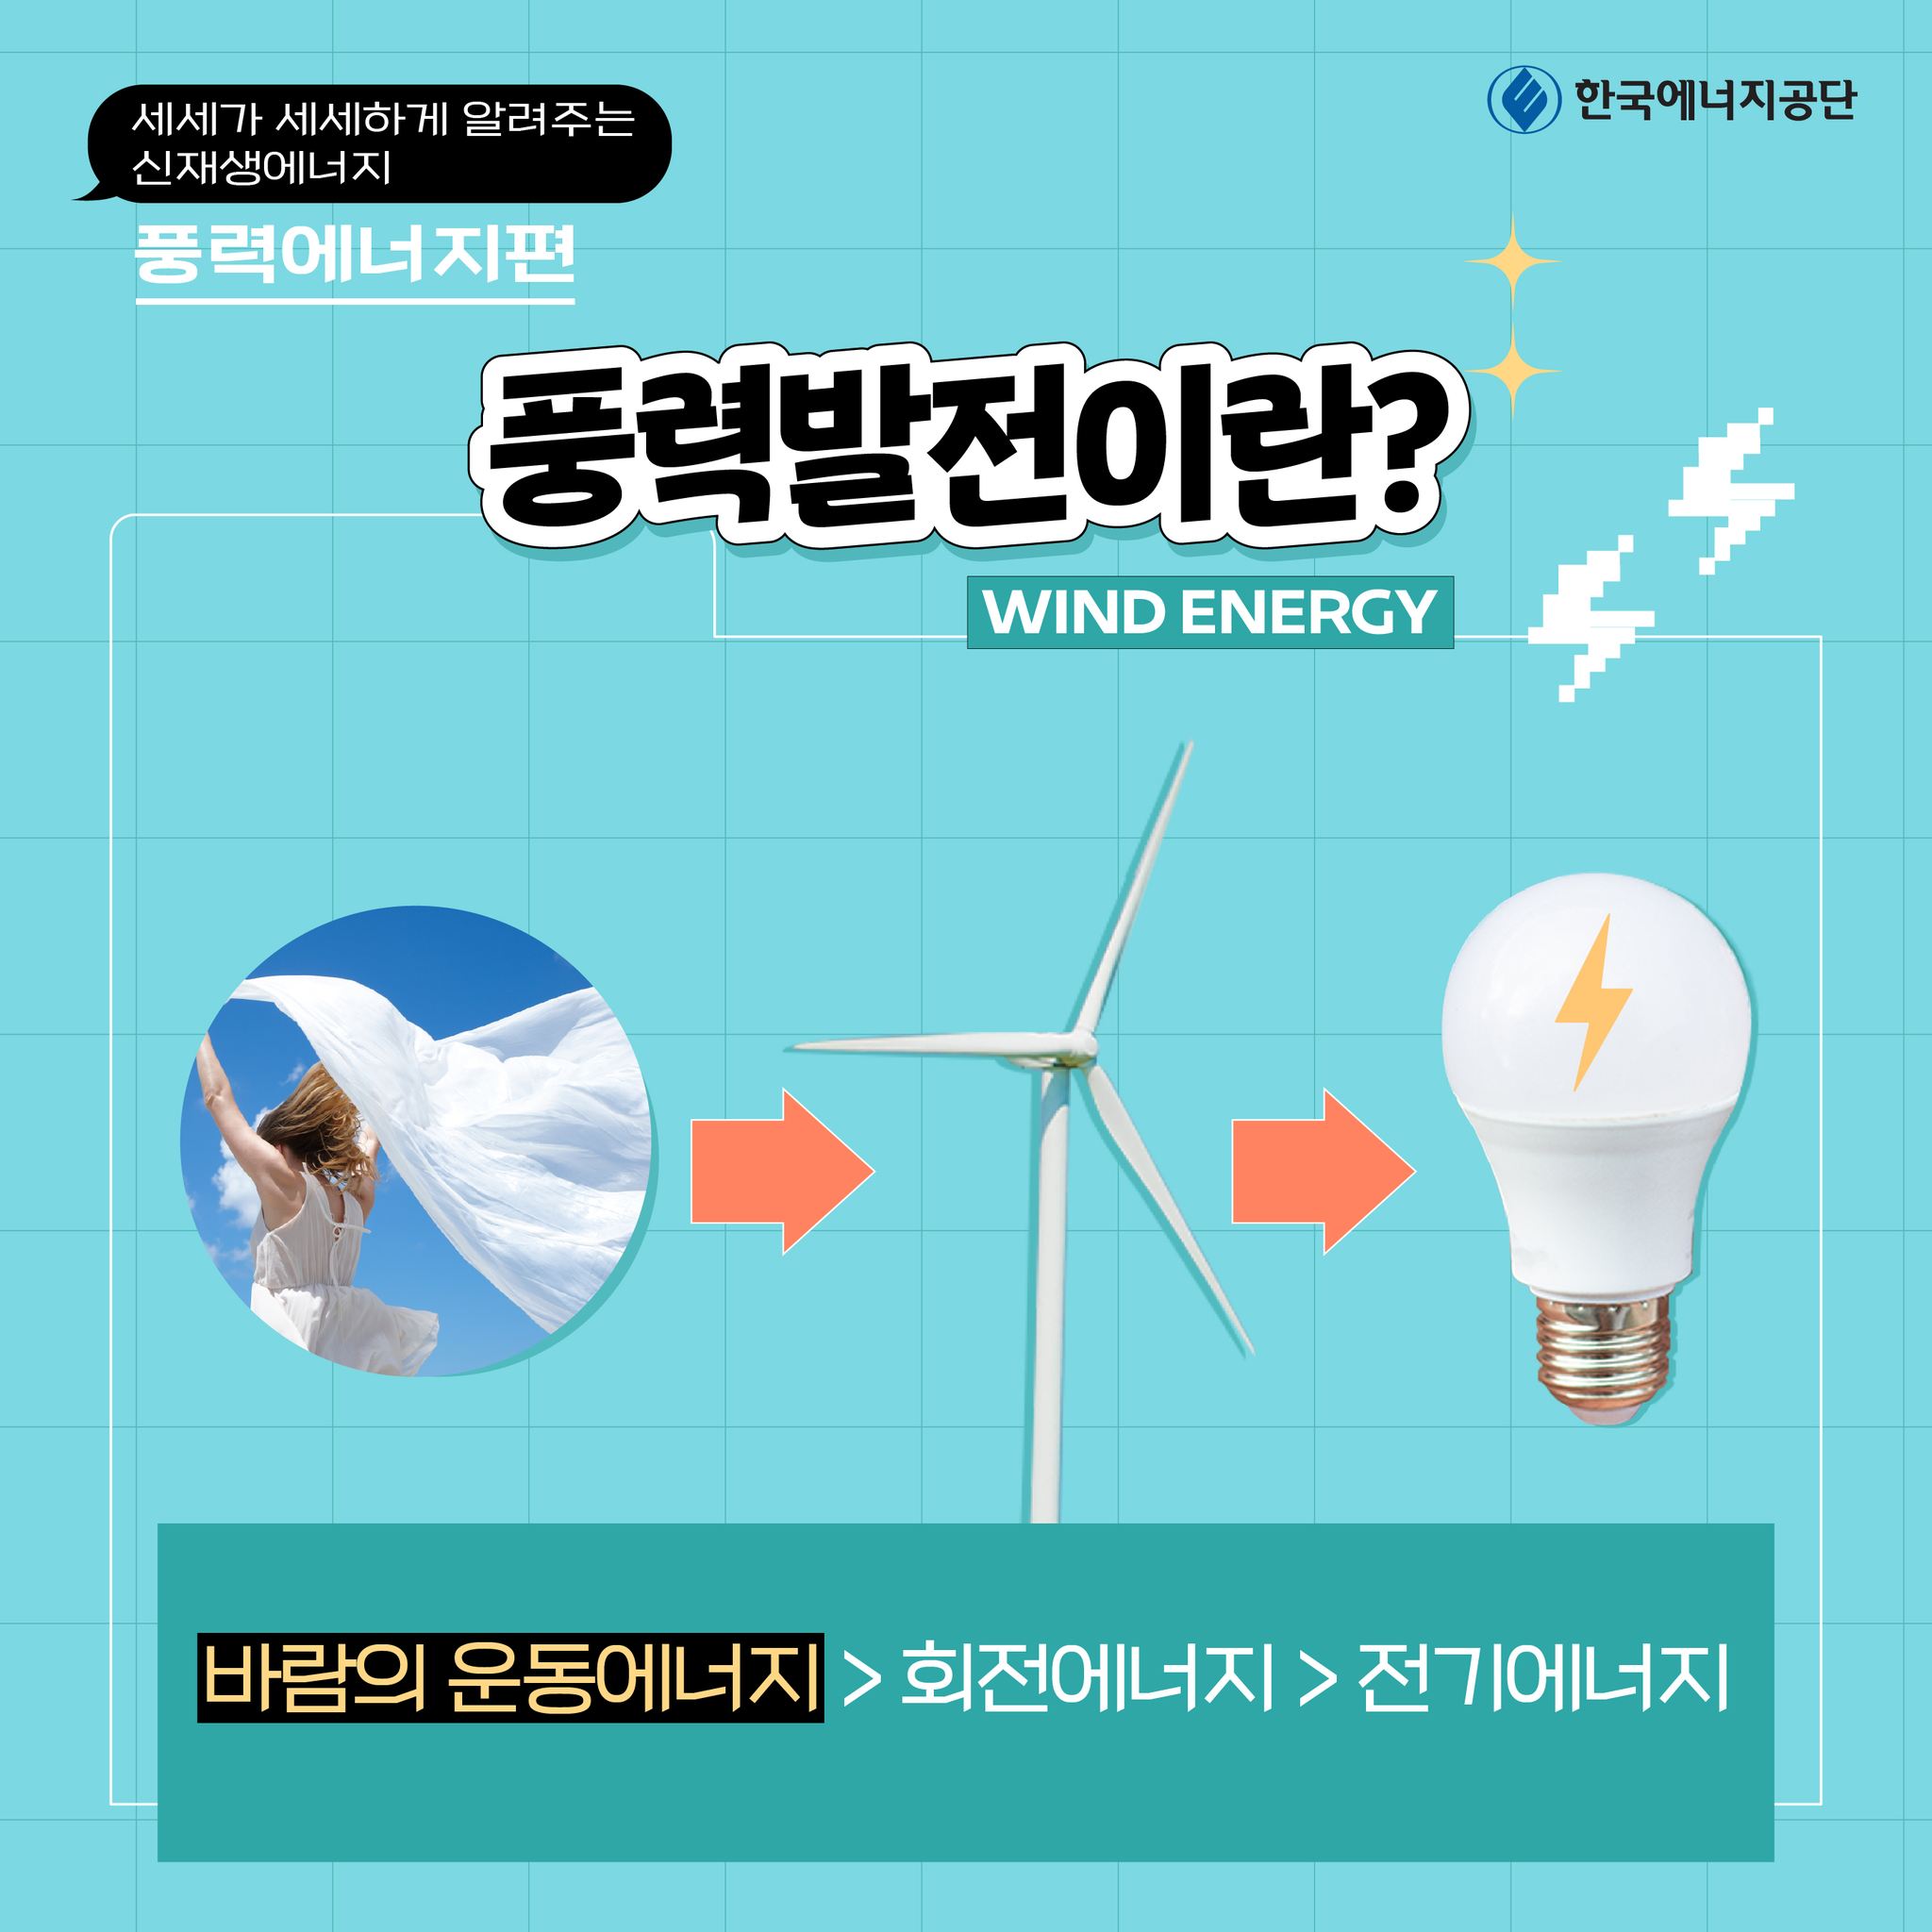 문구: 세세가 세세하게 알려주는 신·재생에너지 풍력에너지편 풍력발전이란? WIND ENERGY 바람의 운동에너지 > 회전에너지 > 전기에너지